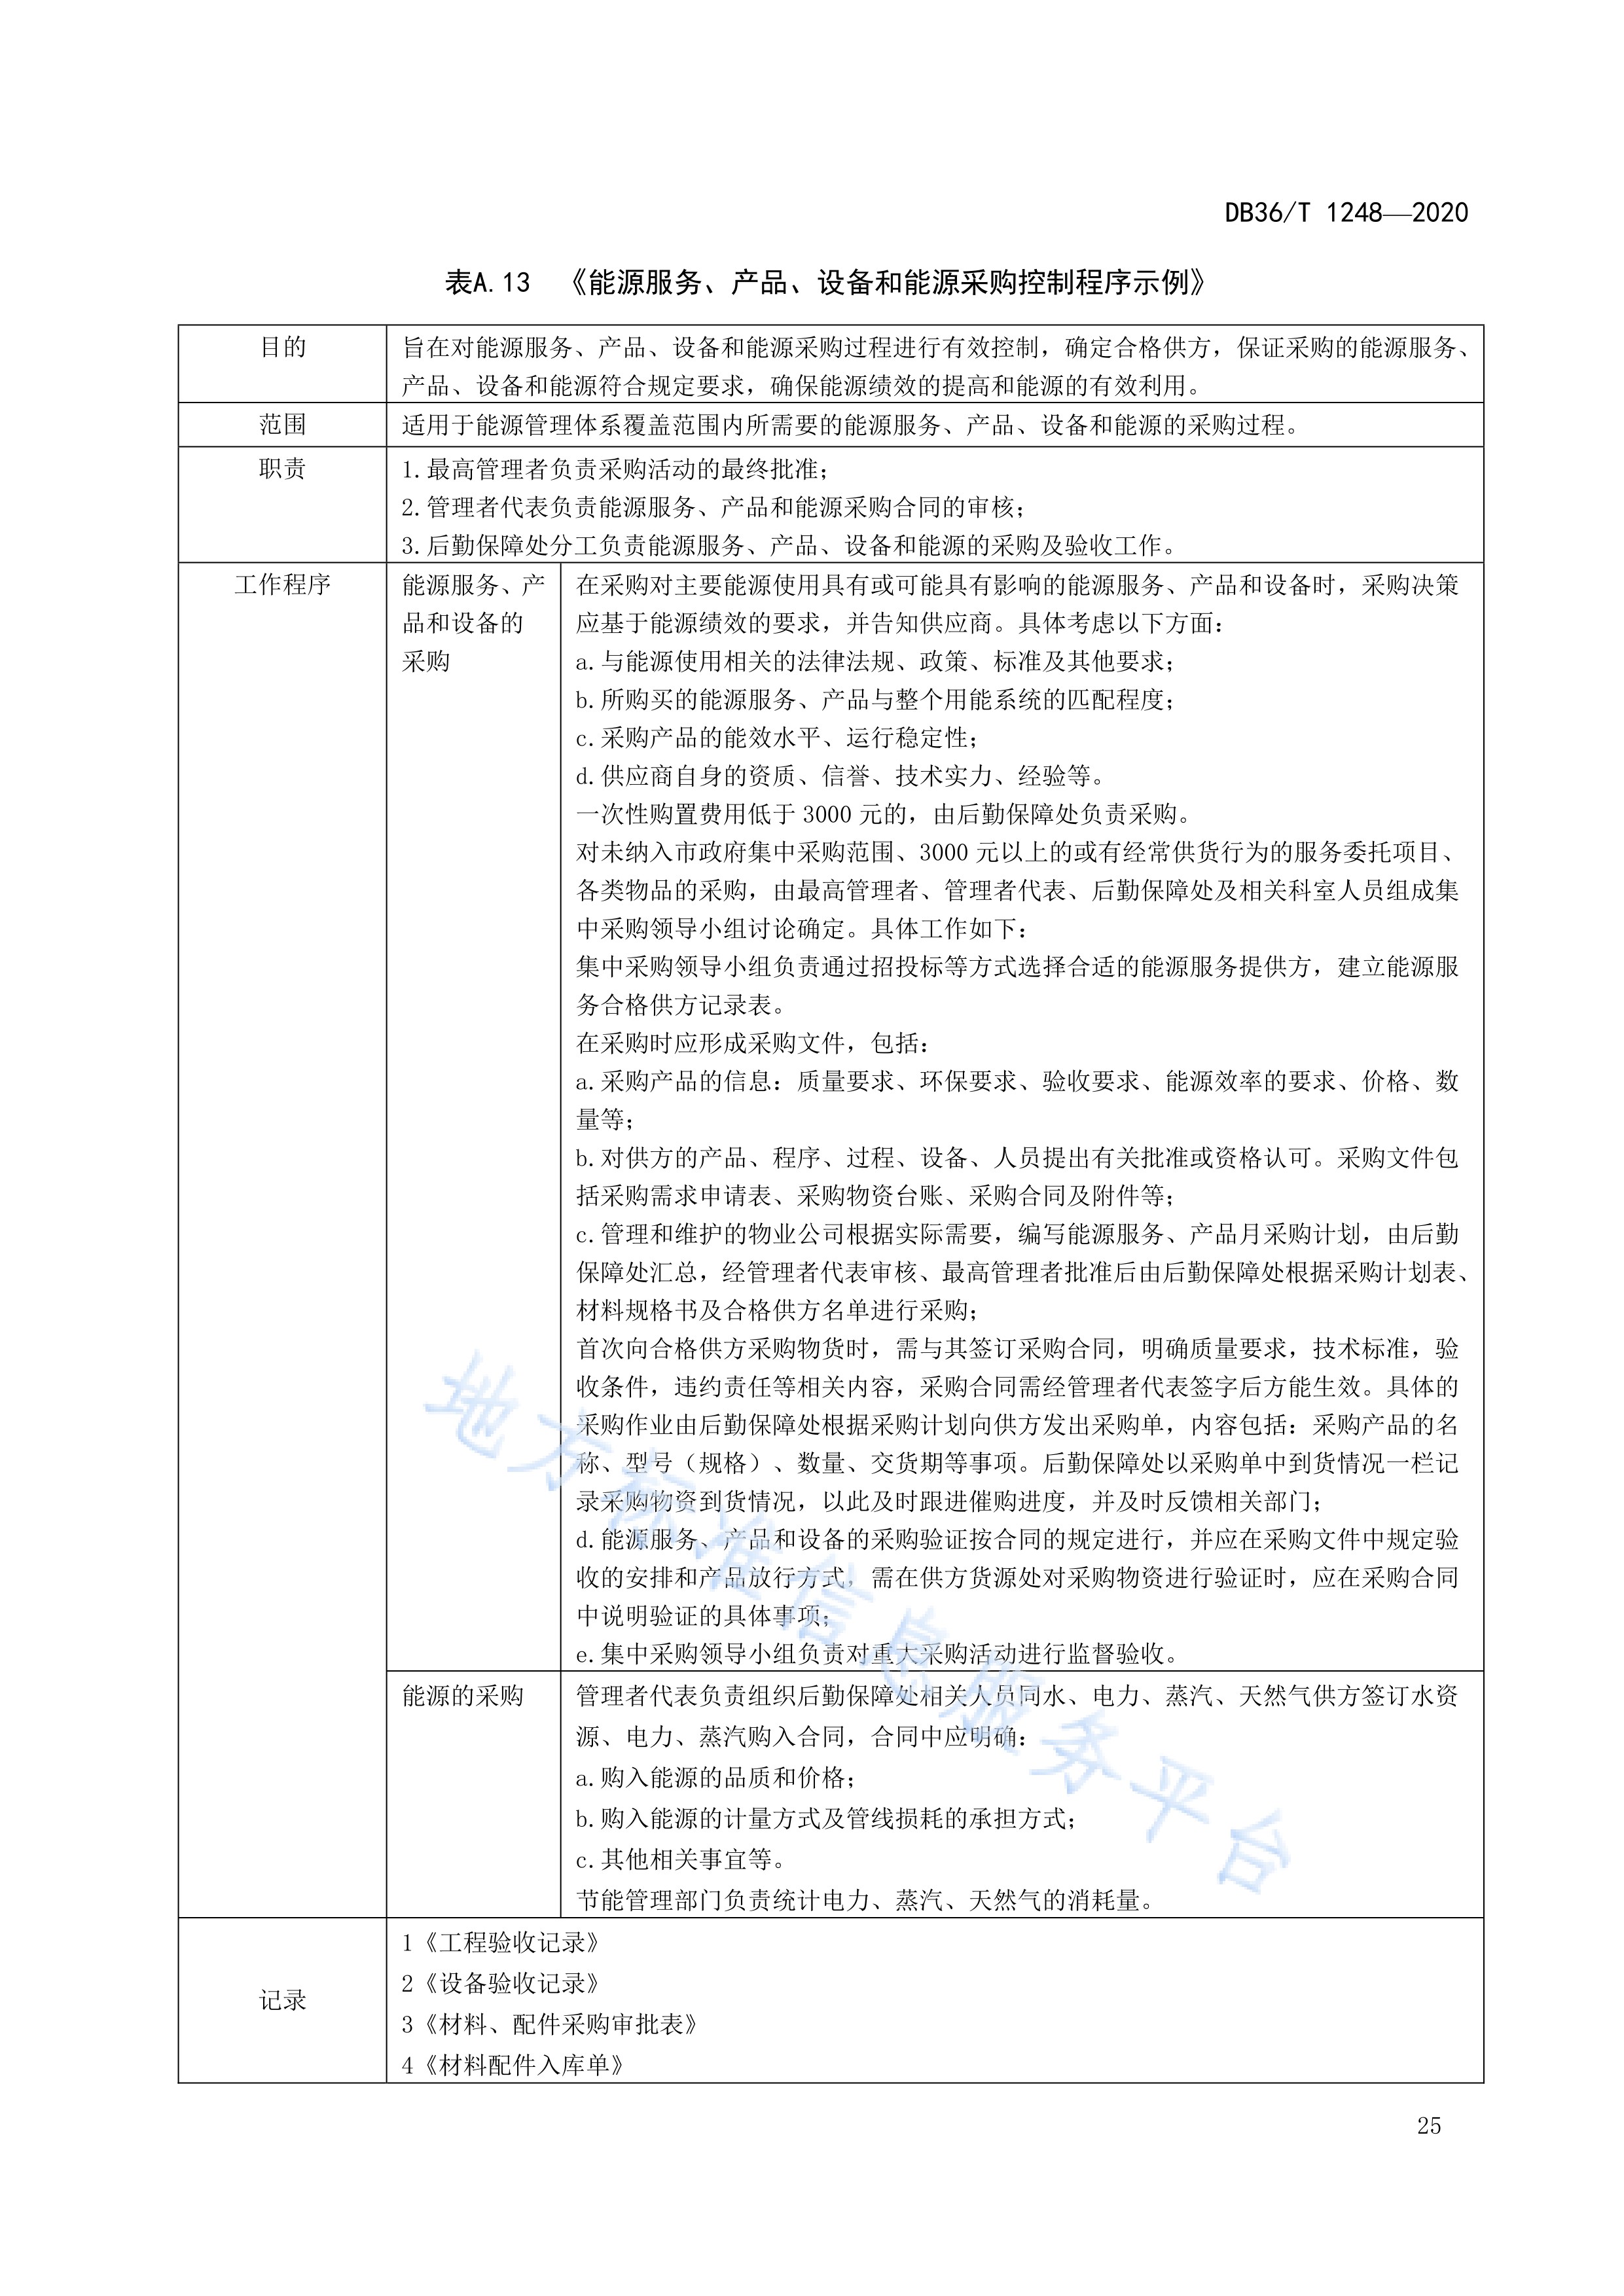 浙江省地方标准数据资产确认工作指南的简单介绍